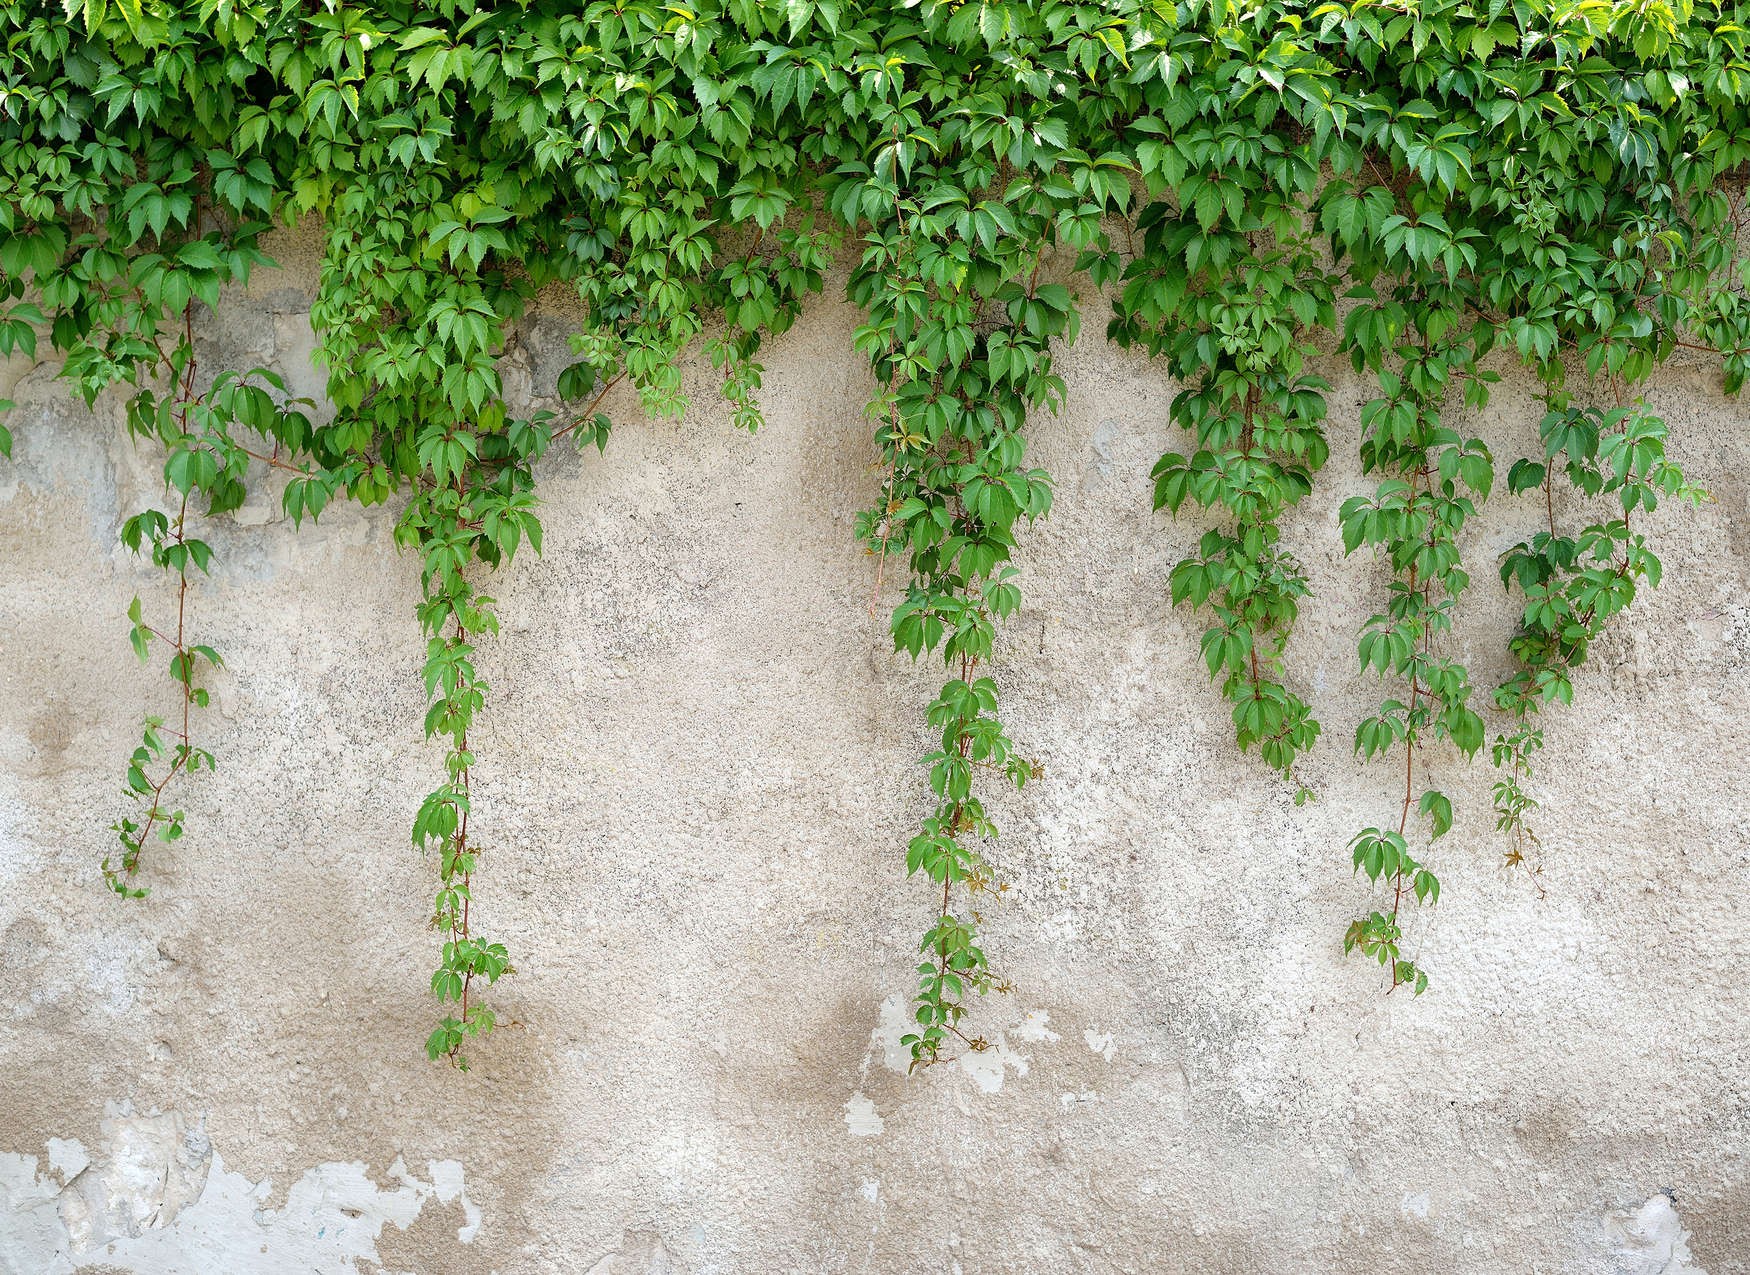             Mur en béton avec feuillages - Vert, Gris
        